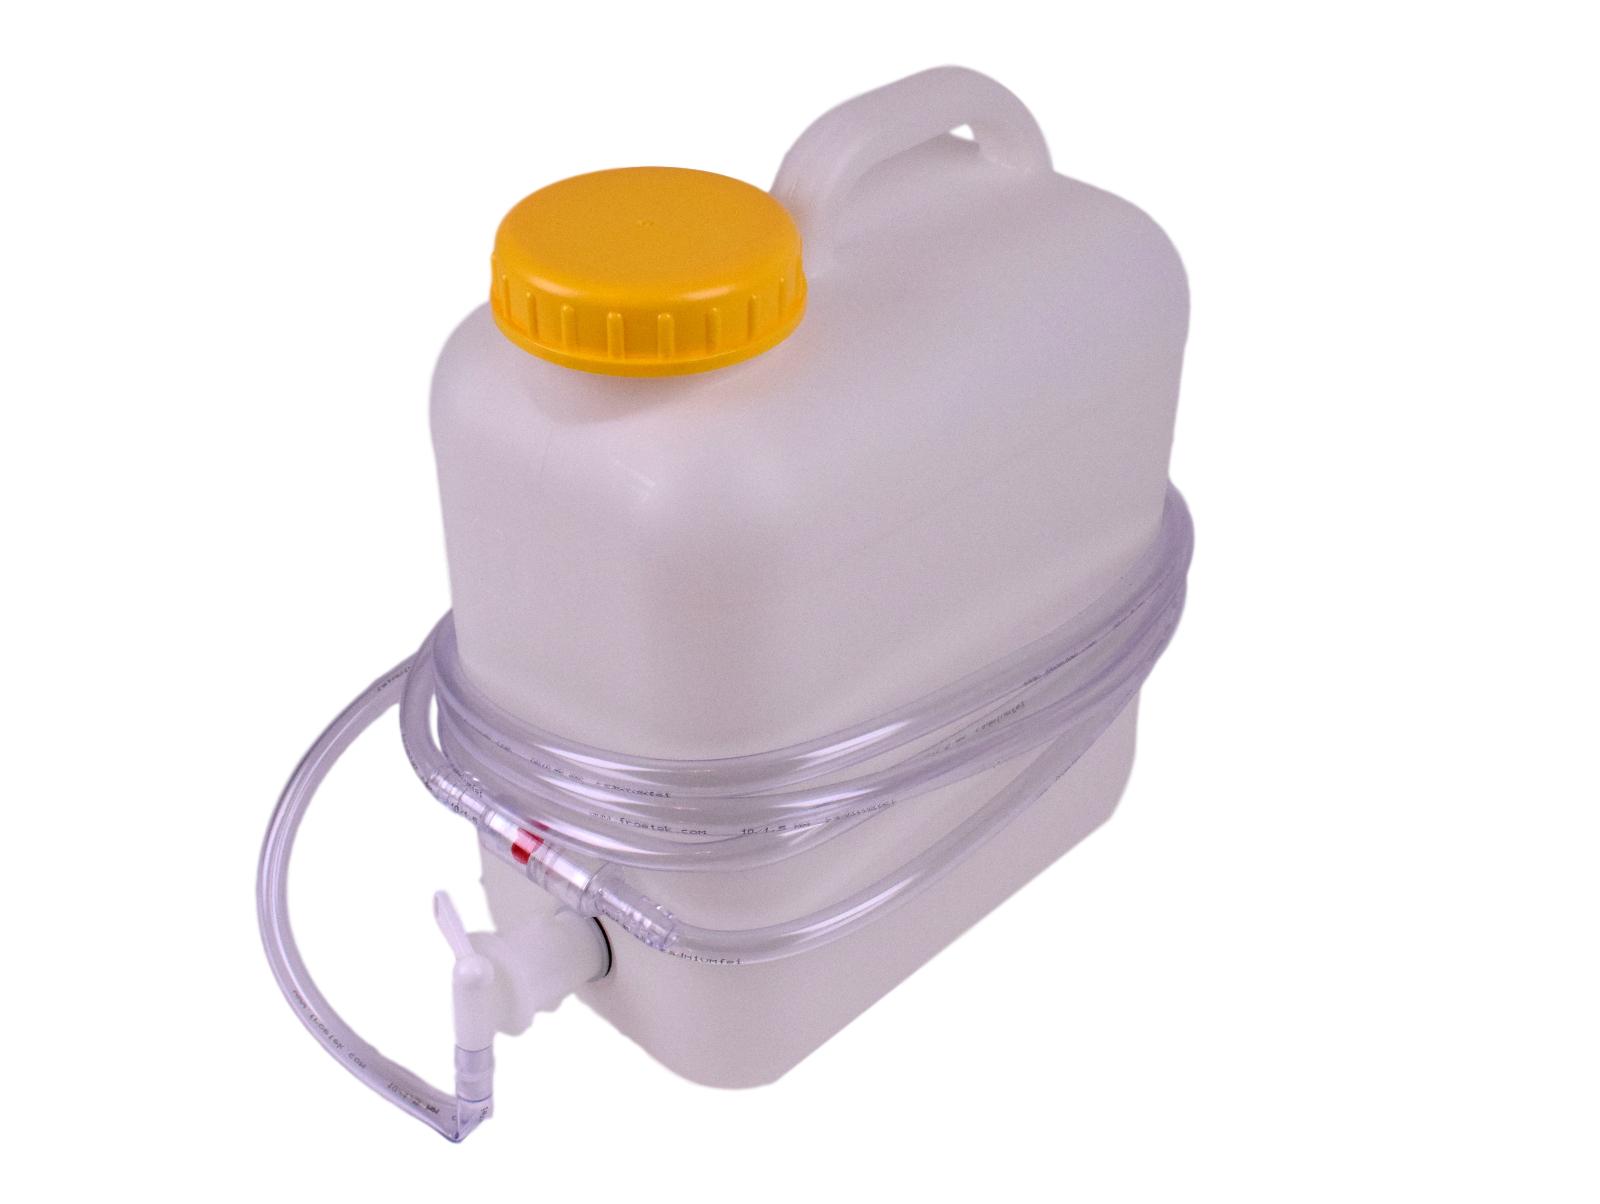 Aquamatik Behälter Gabelstaplerbatterie Fallwasserbehälter Wasserkanister 20 L 